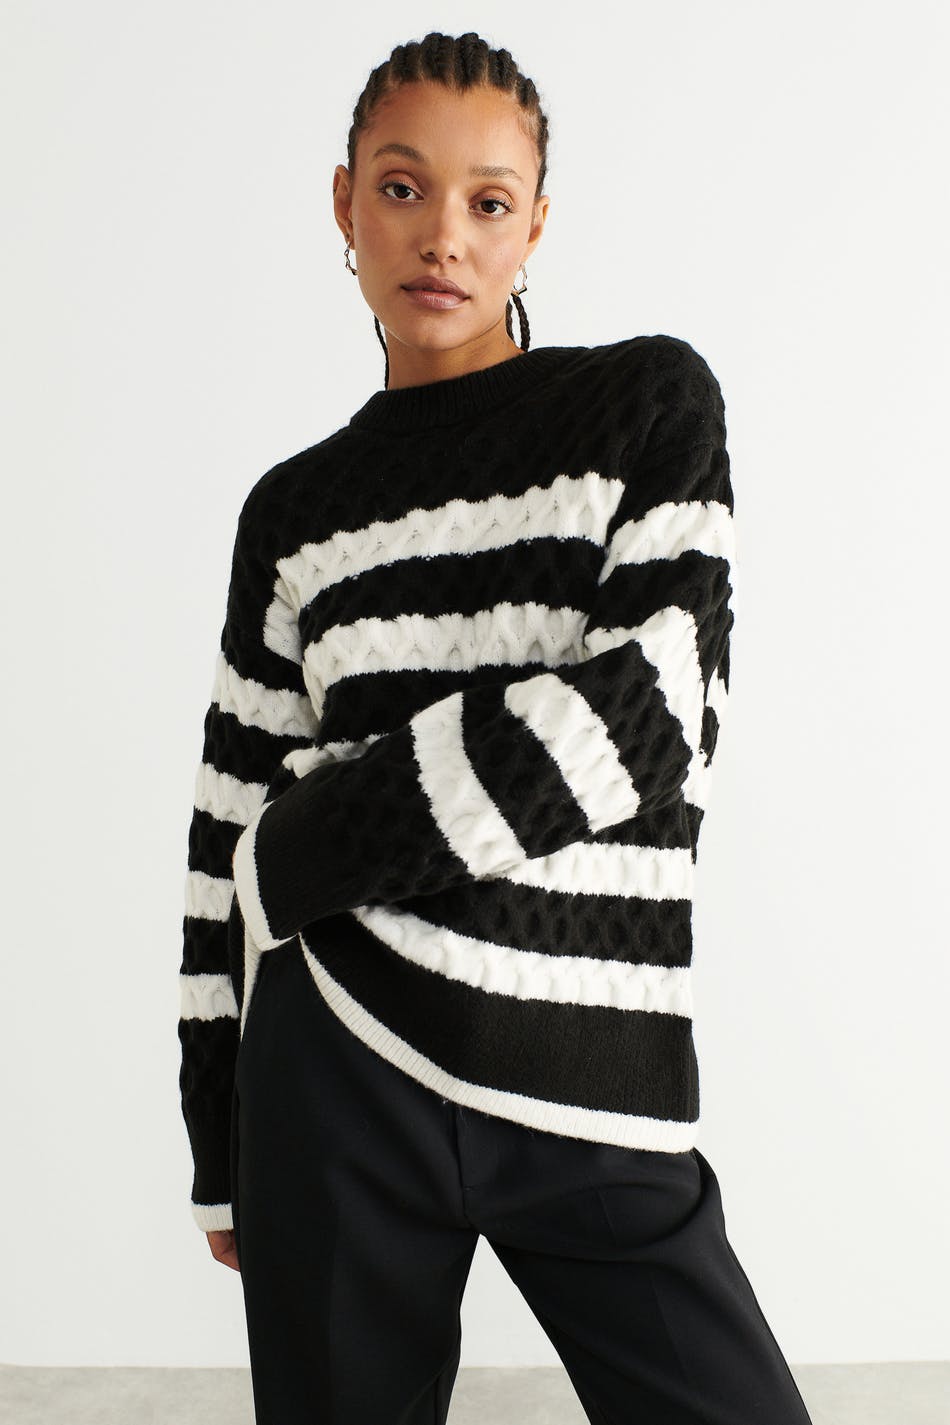 Korrekt Faret vild katolsk Jasmina knitted sweater - Gina Tricot